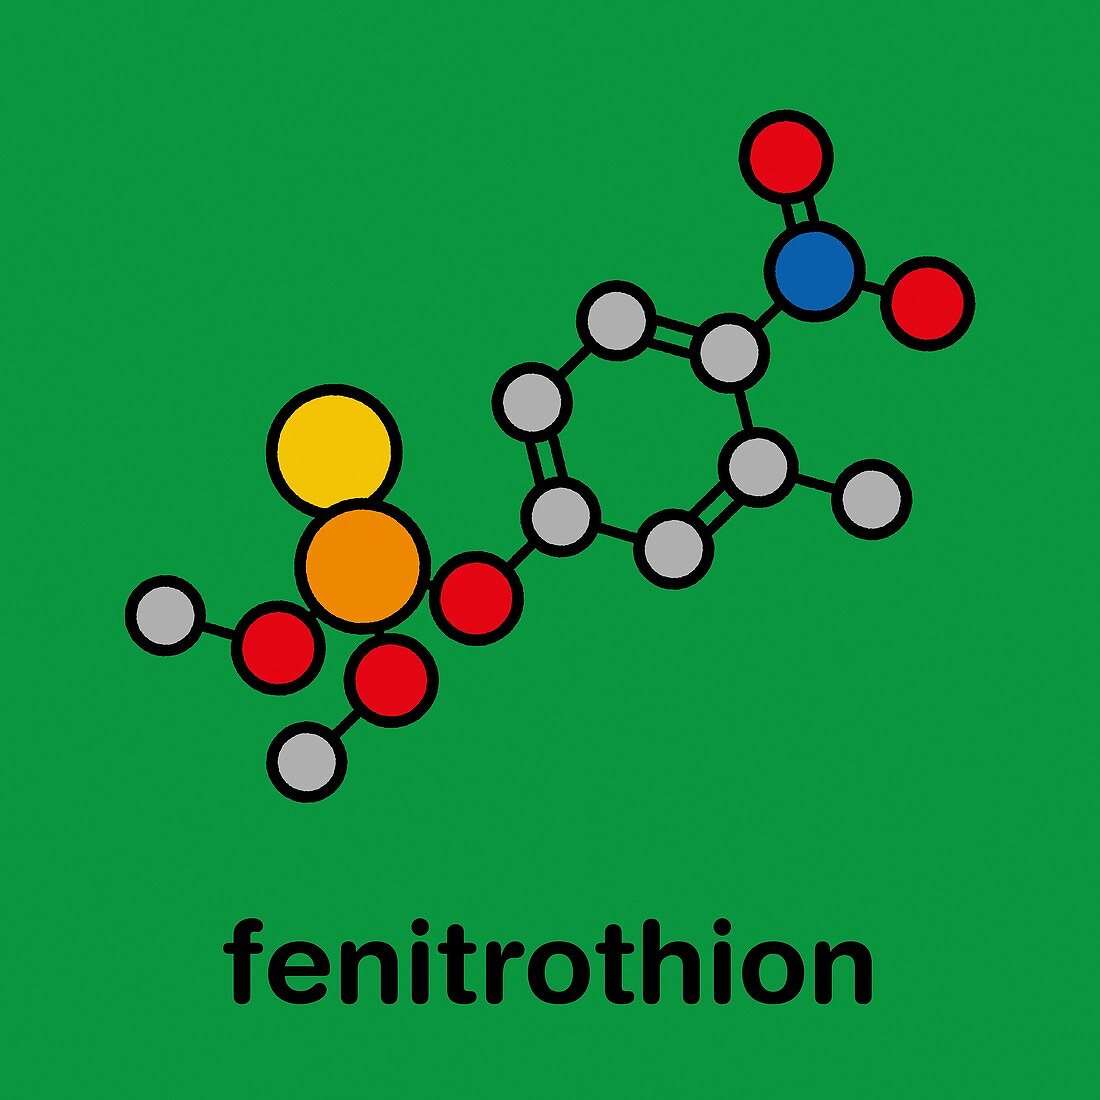 Fenitrothion phosphorothioate insecticide, illustration